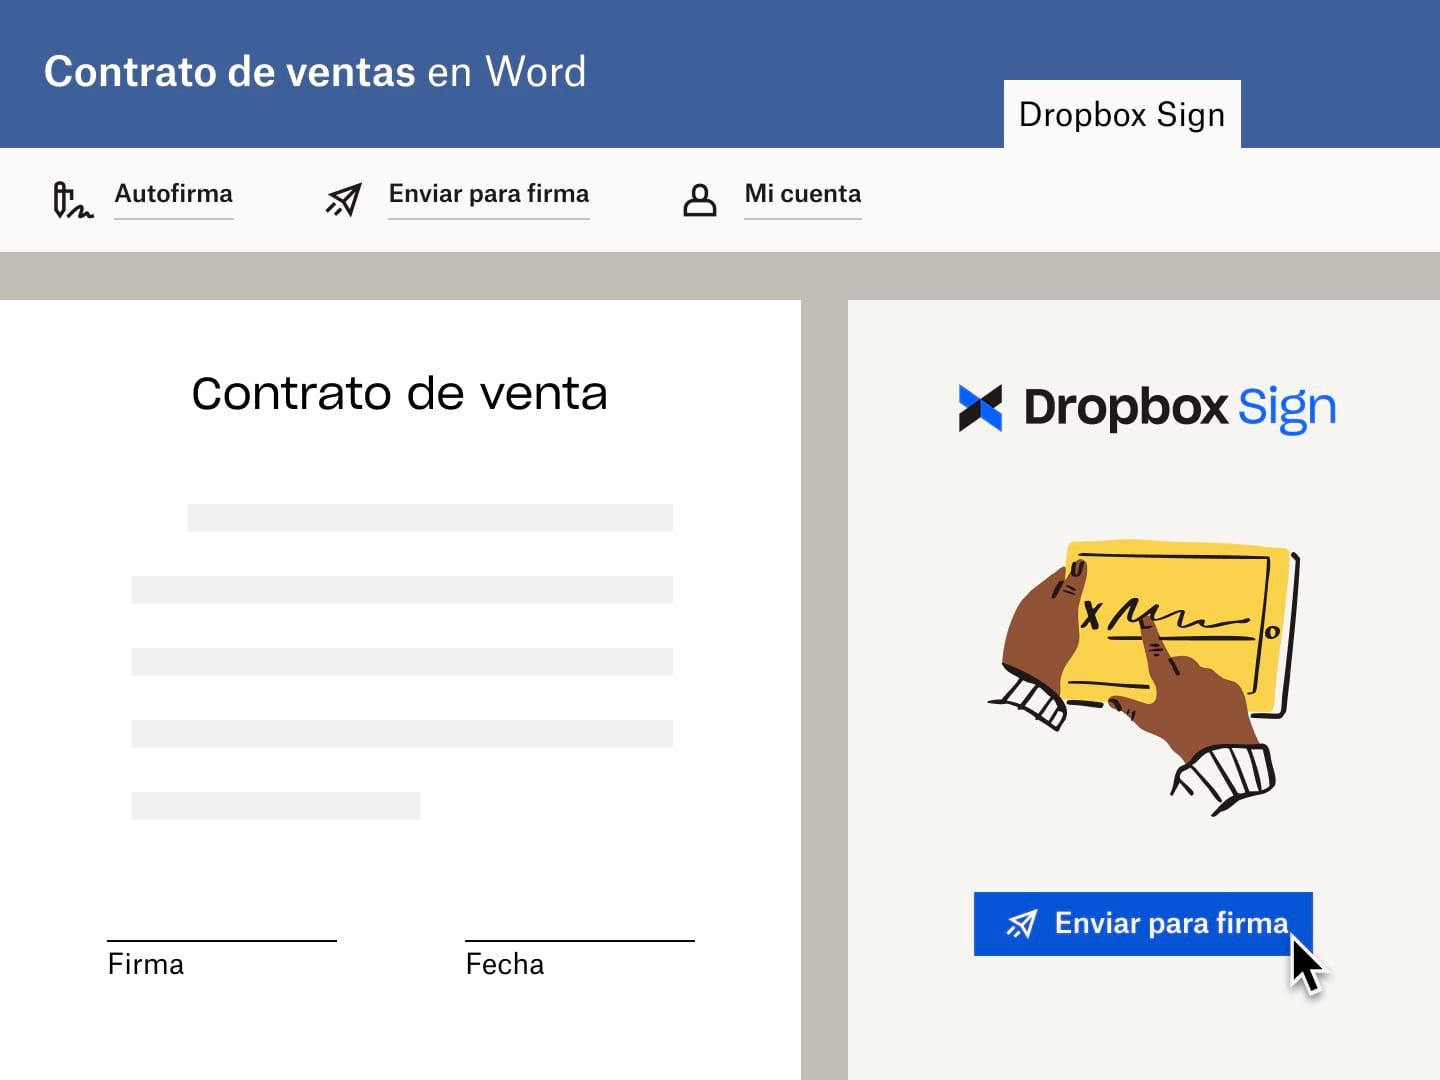 El usuario envía un contrato de ventas en Microsoft Word con una solicitud de firma electrónica de Dropbox Sign